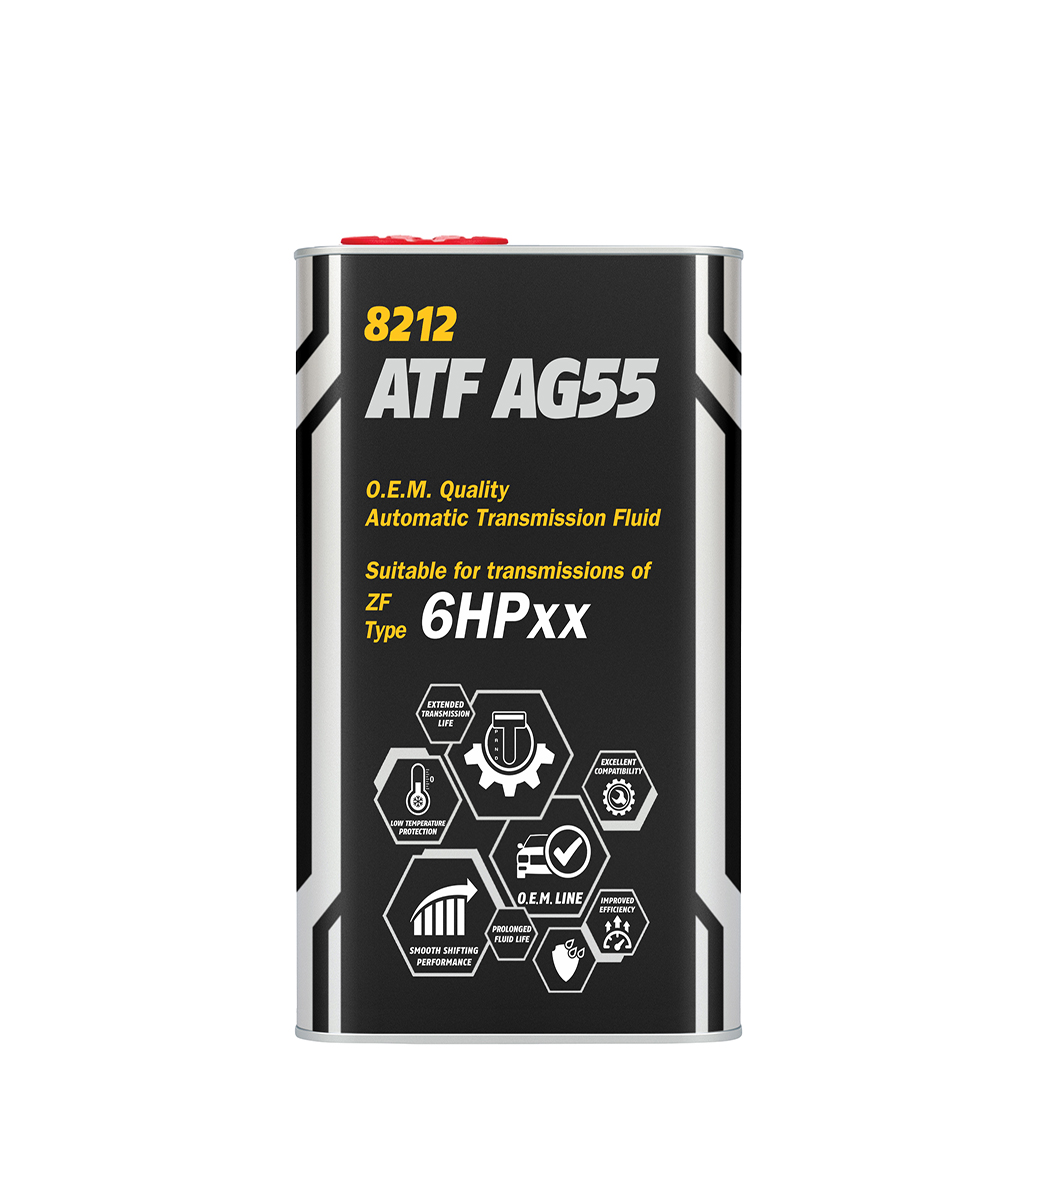 ATF AG55